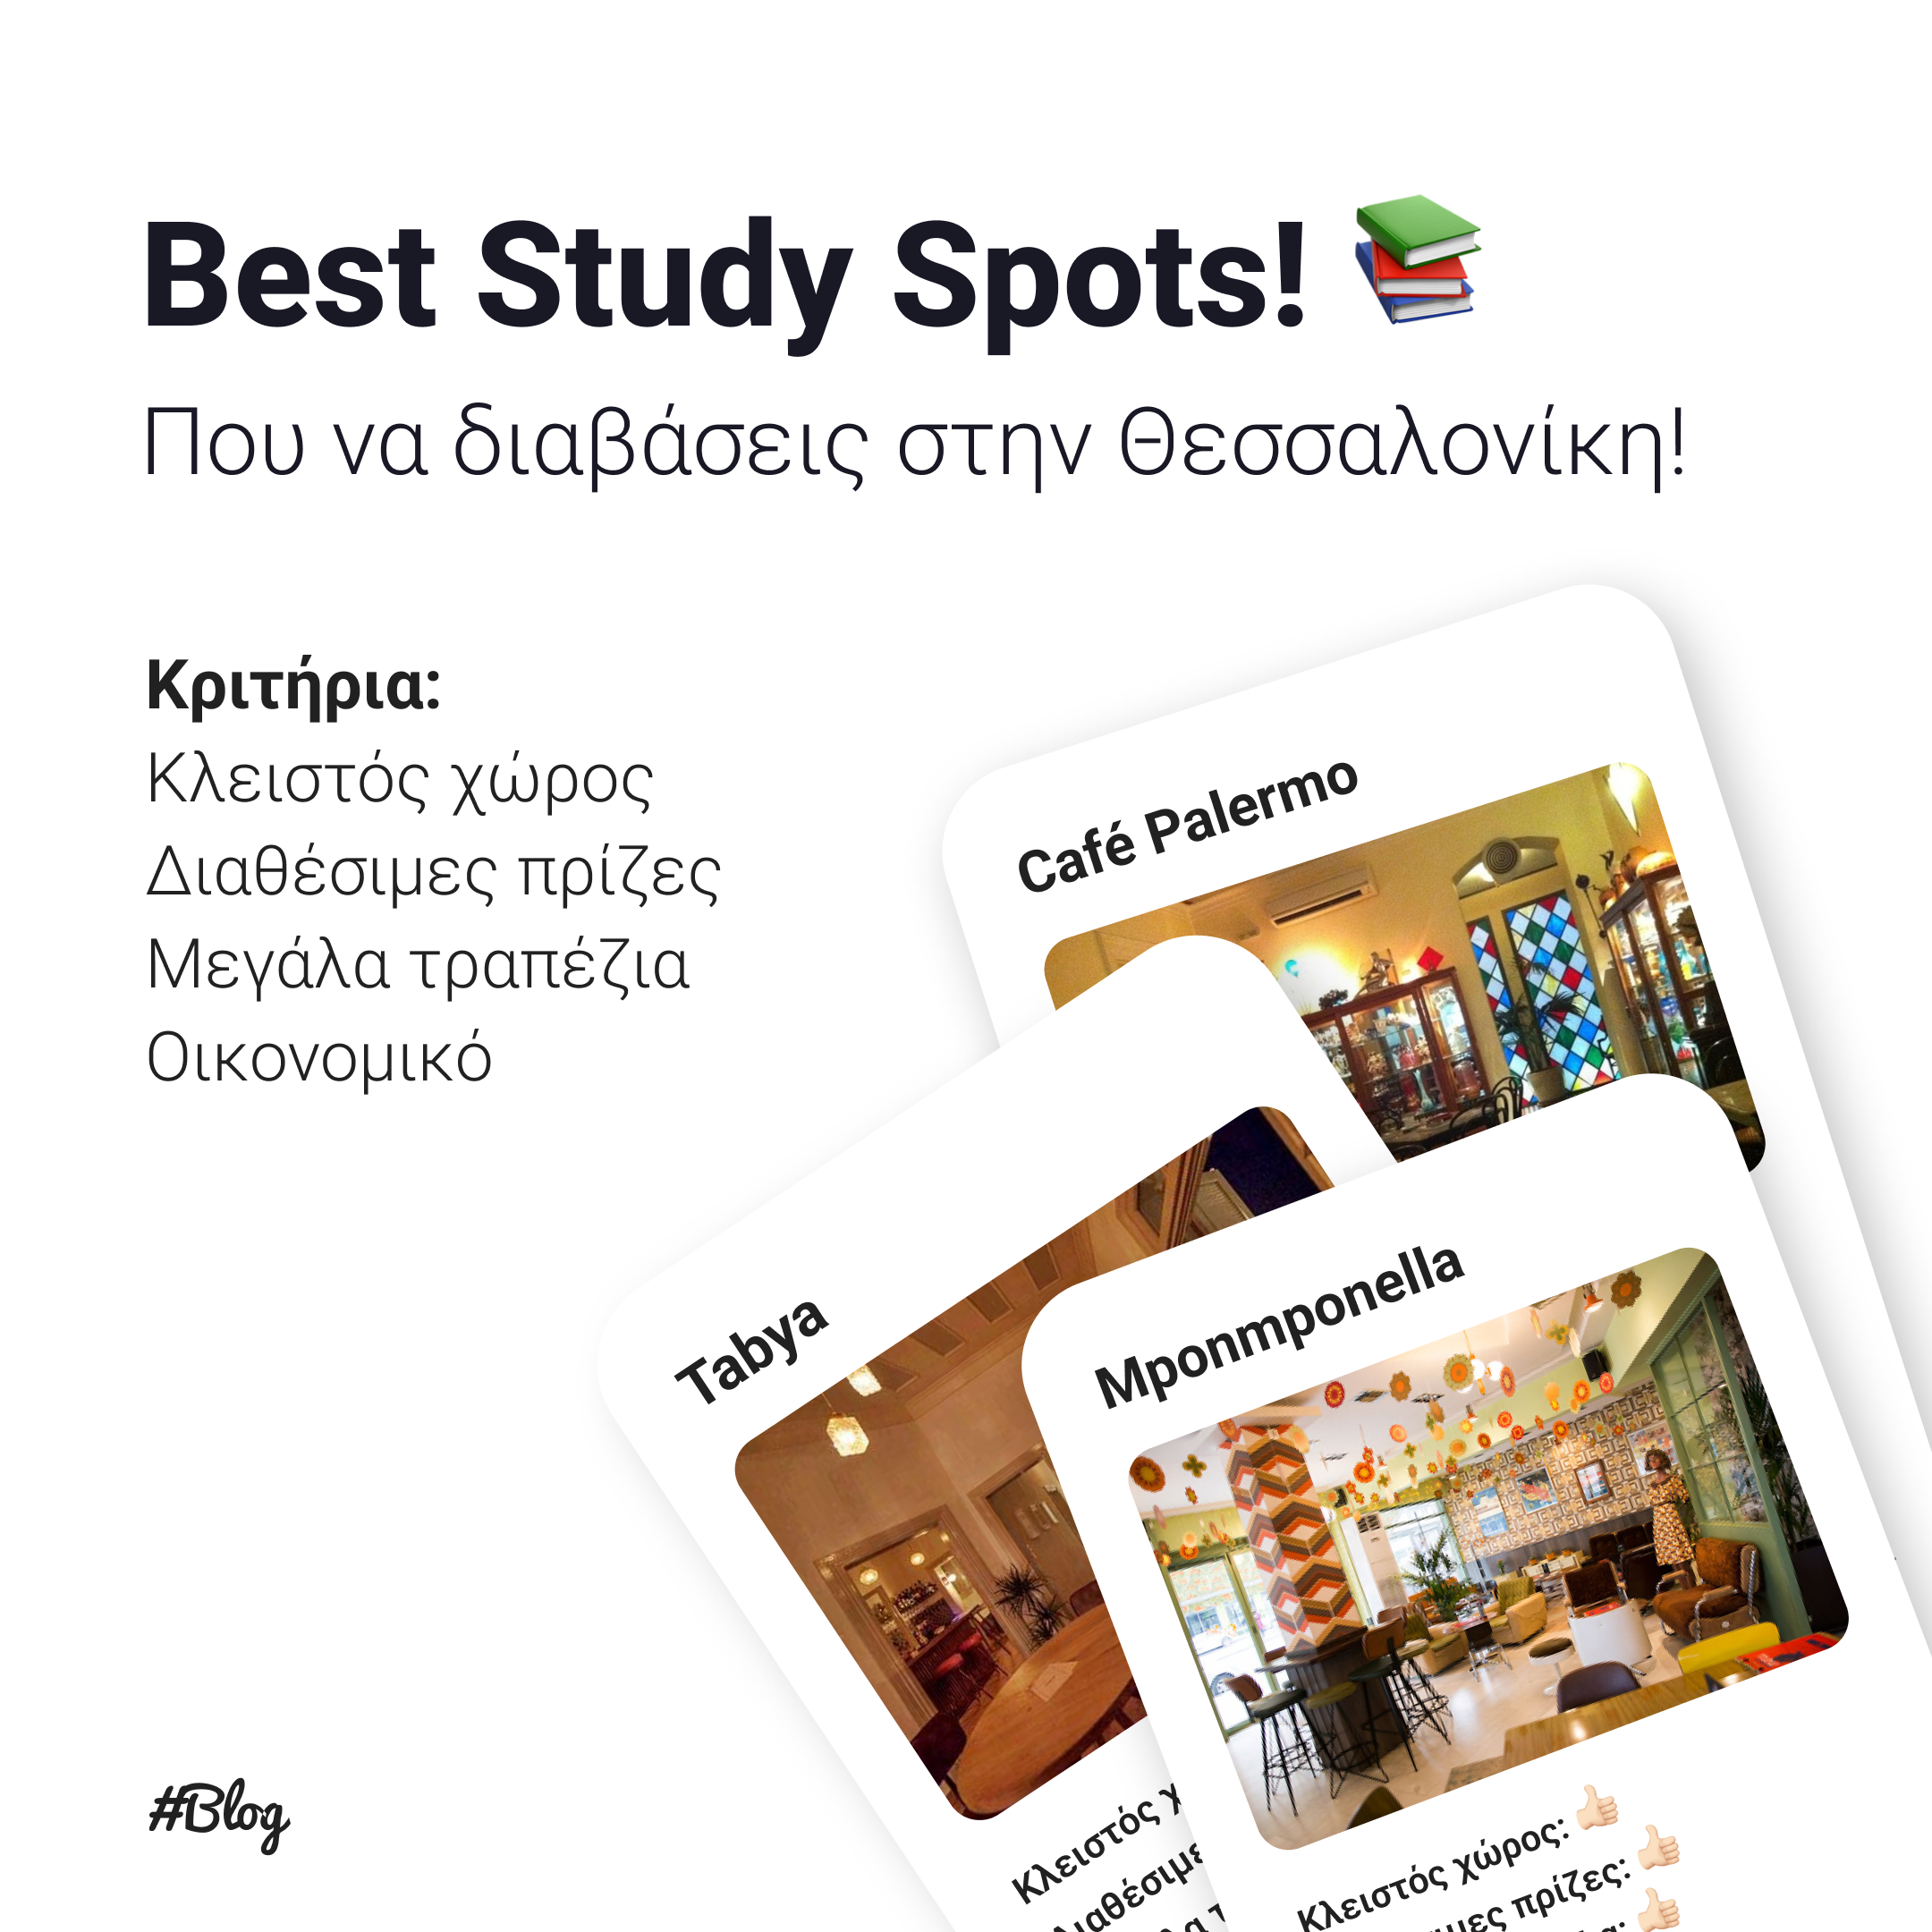 Best Study Spots: Θεσσαλονίκη